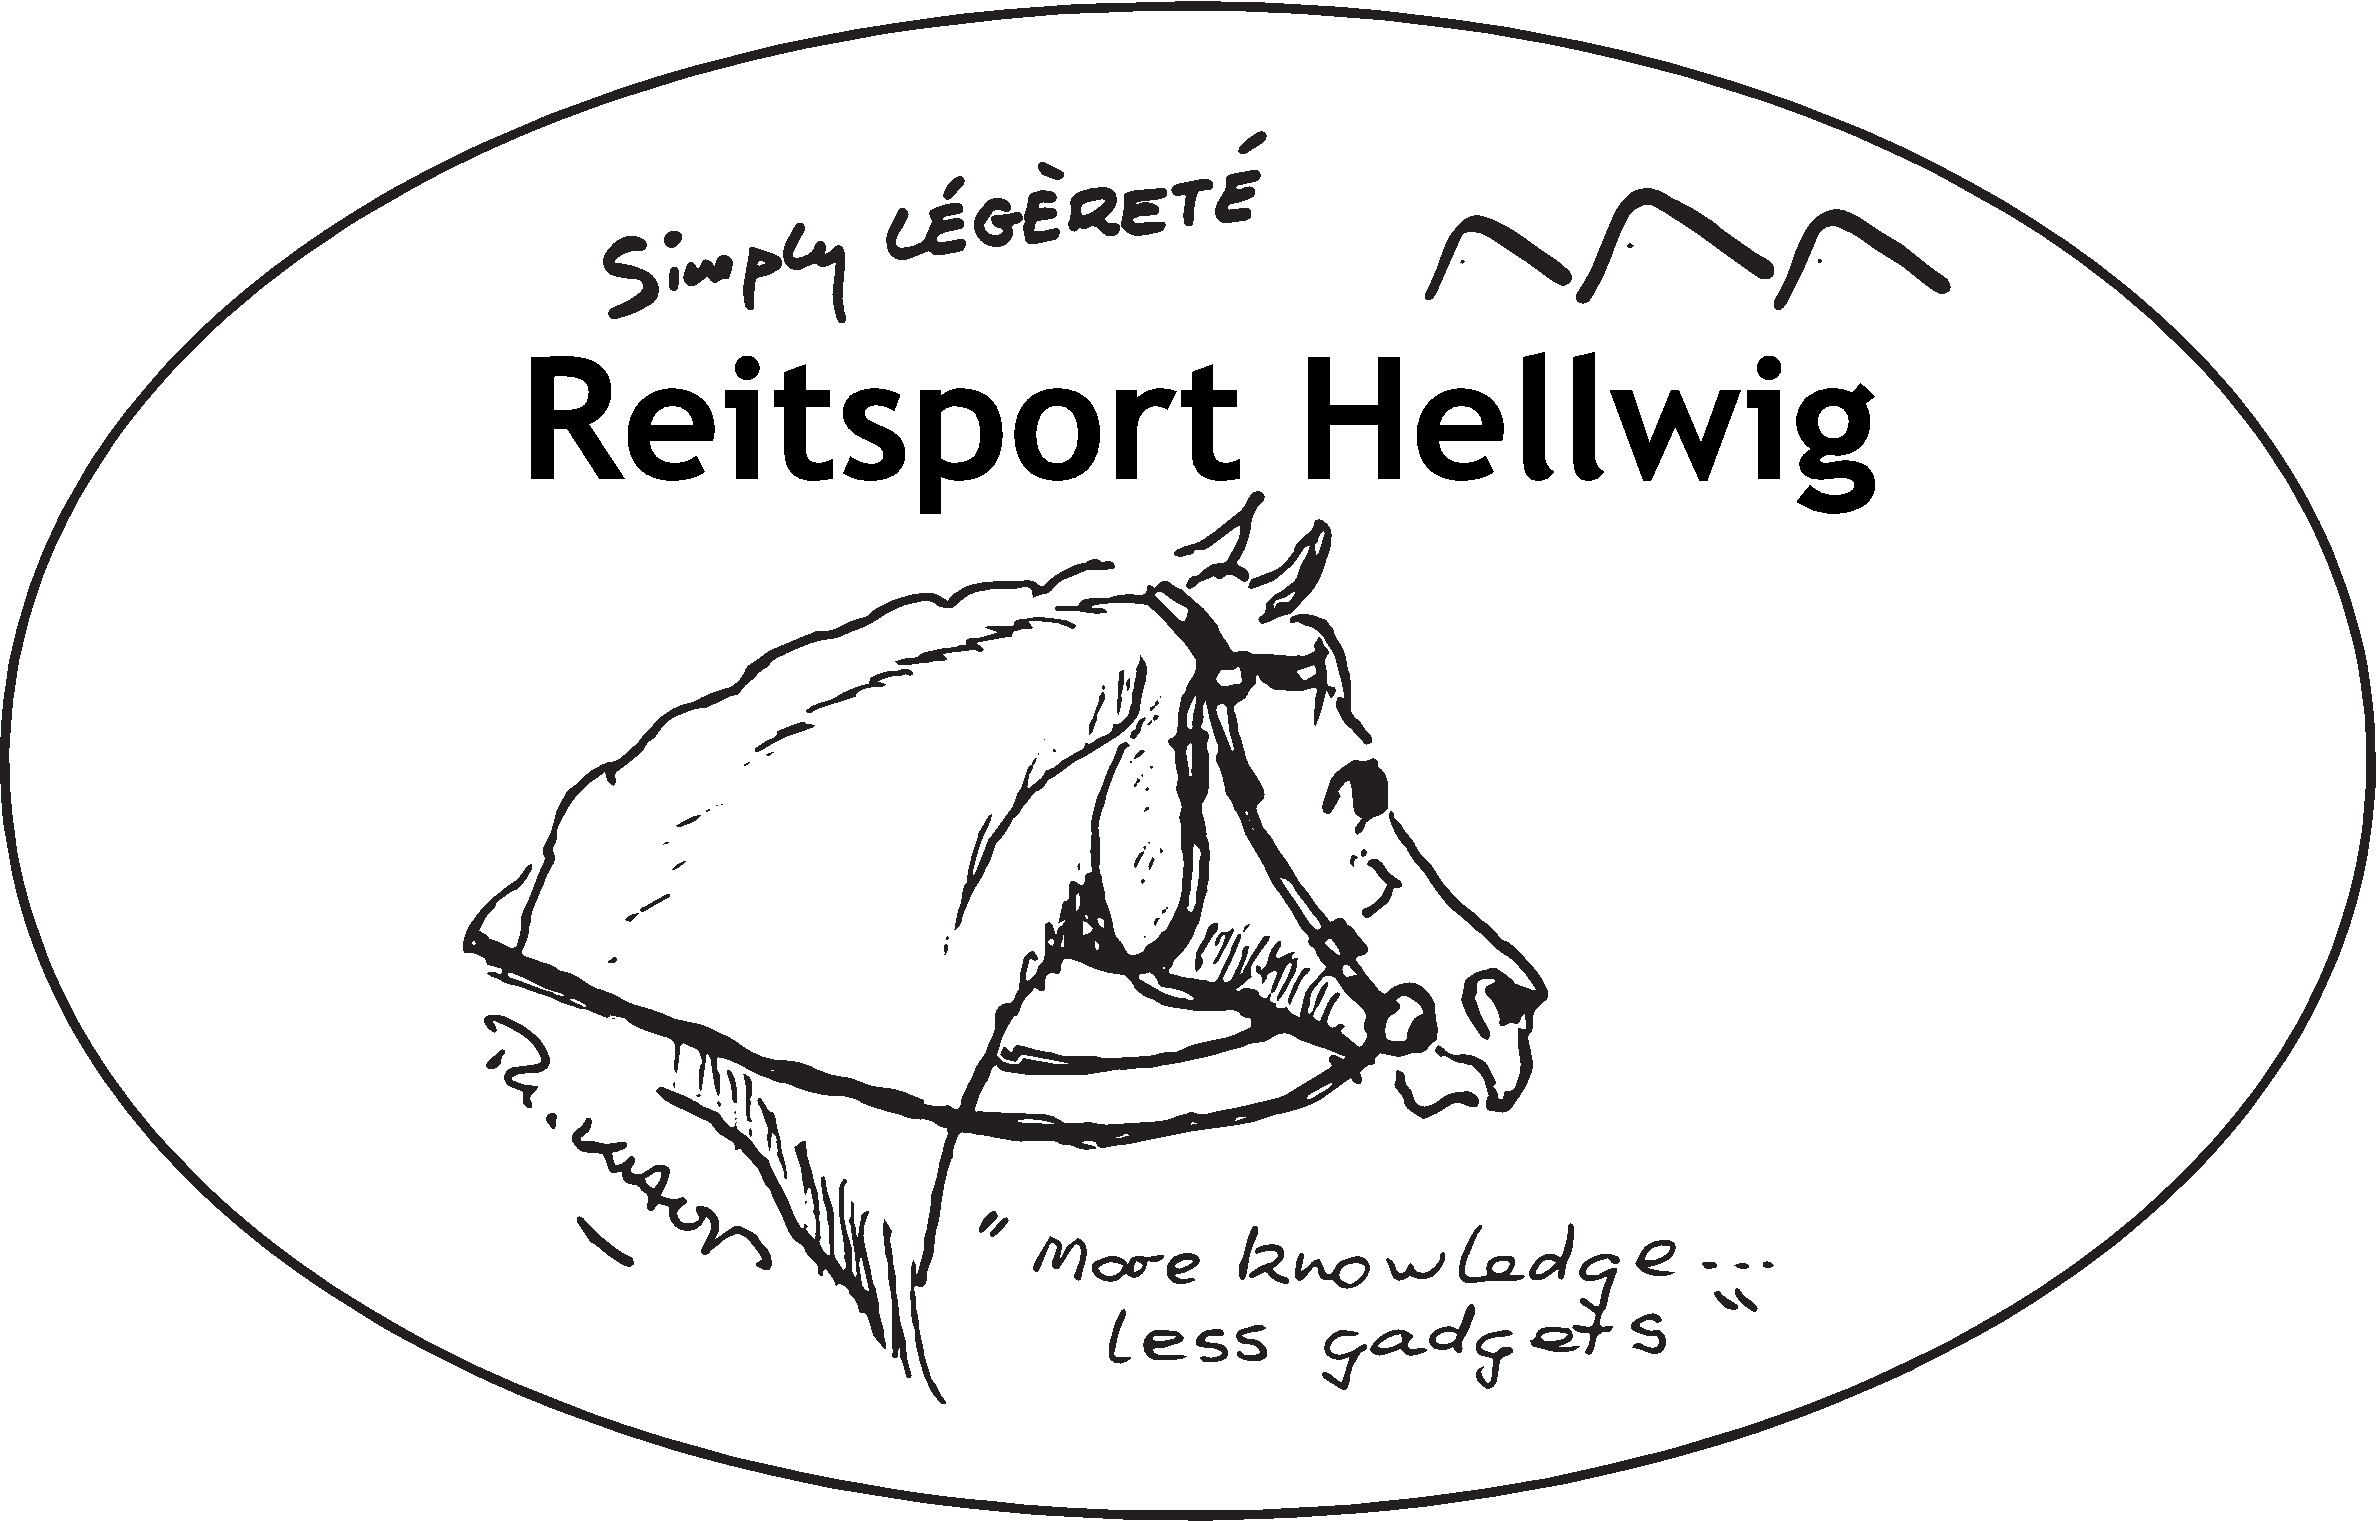 Reitsport Hellwig